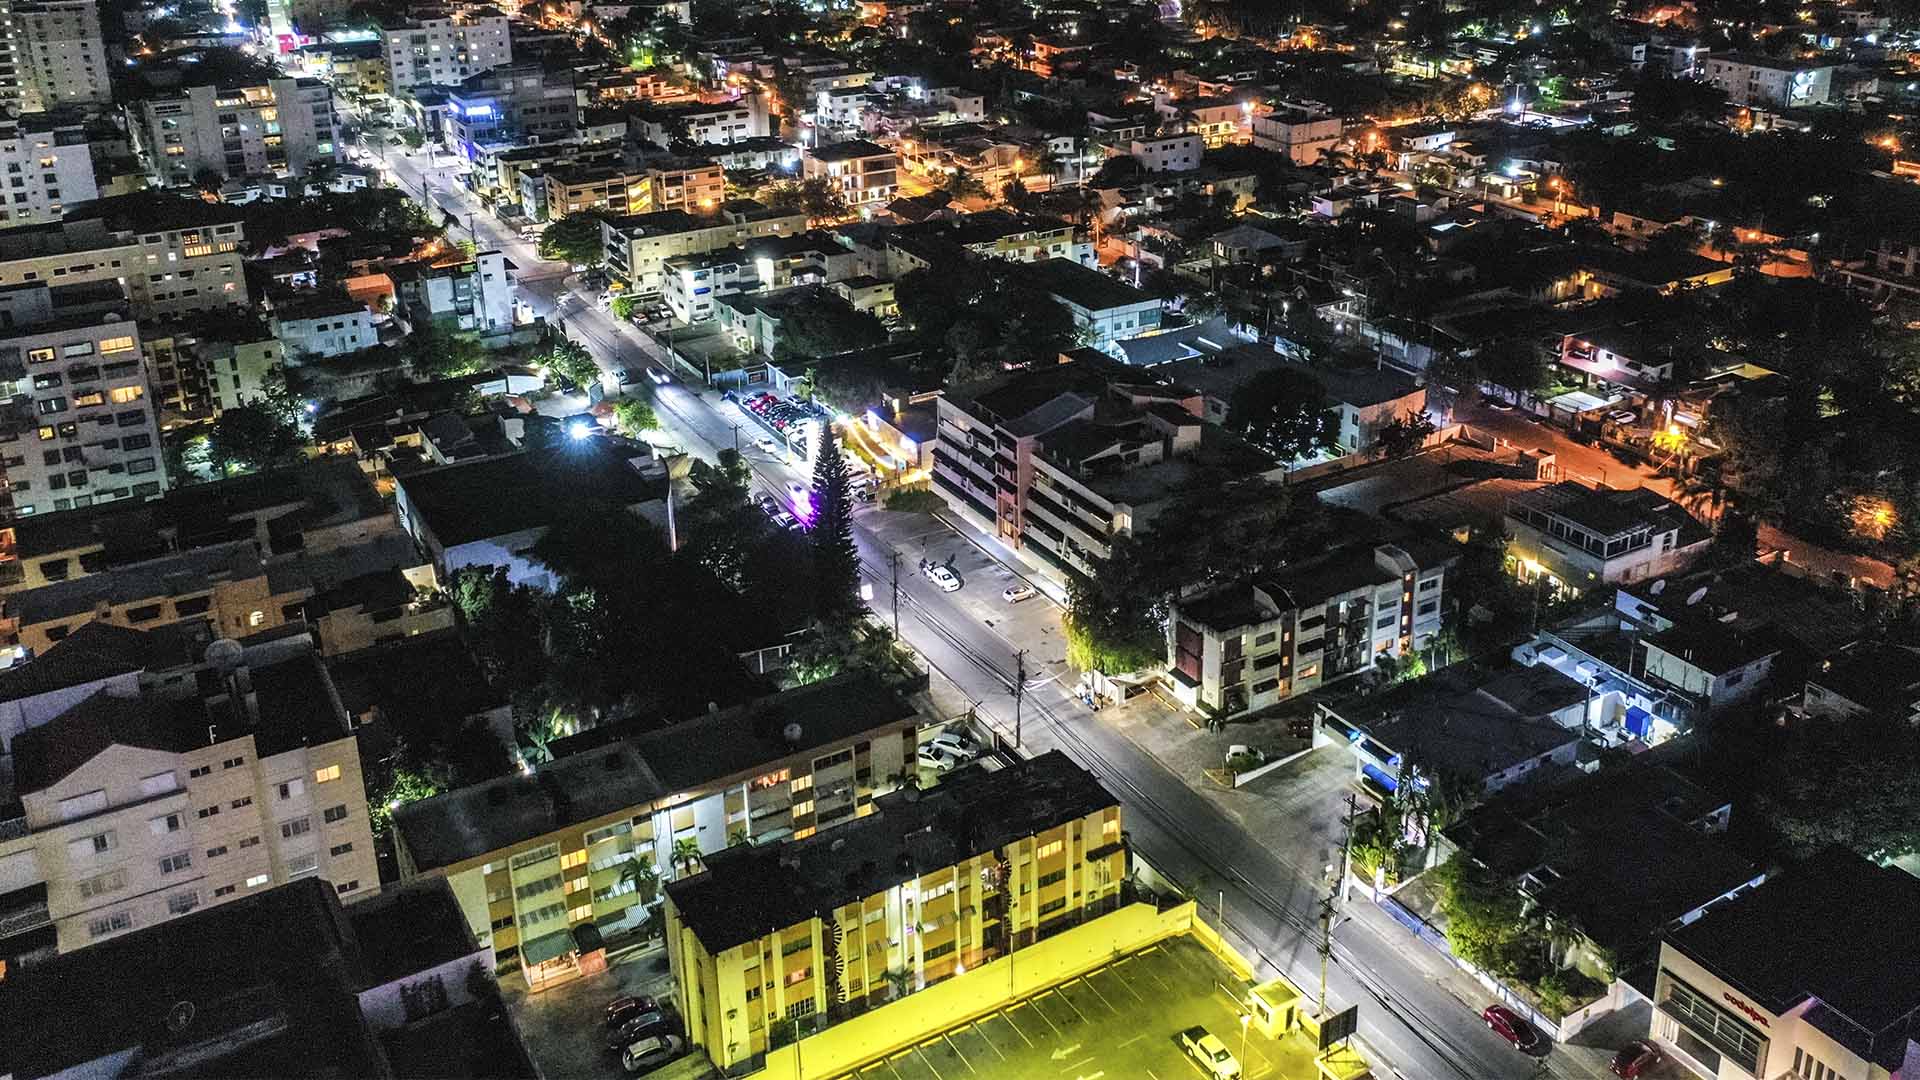 Edesur coloca 1,500 luces más LED en otras avenidas del Distrito Nacional